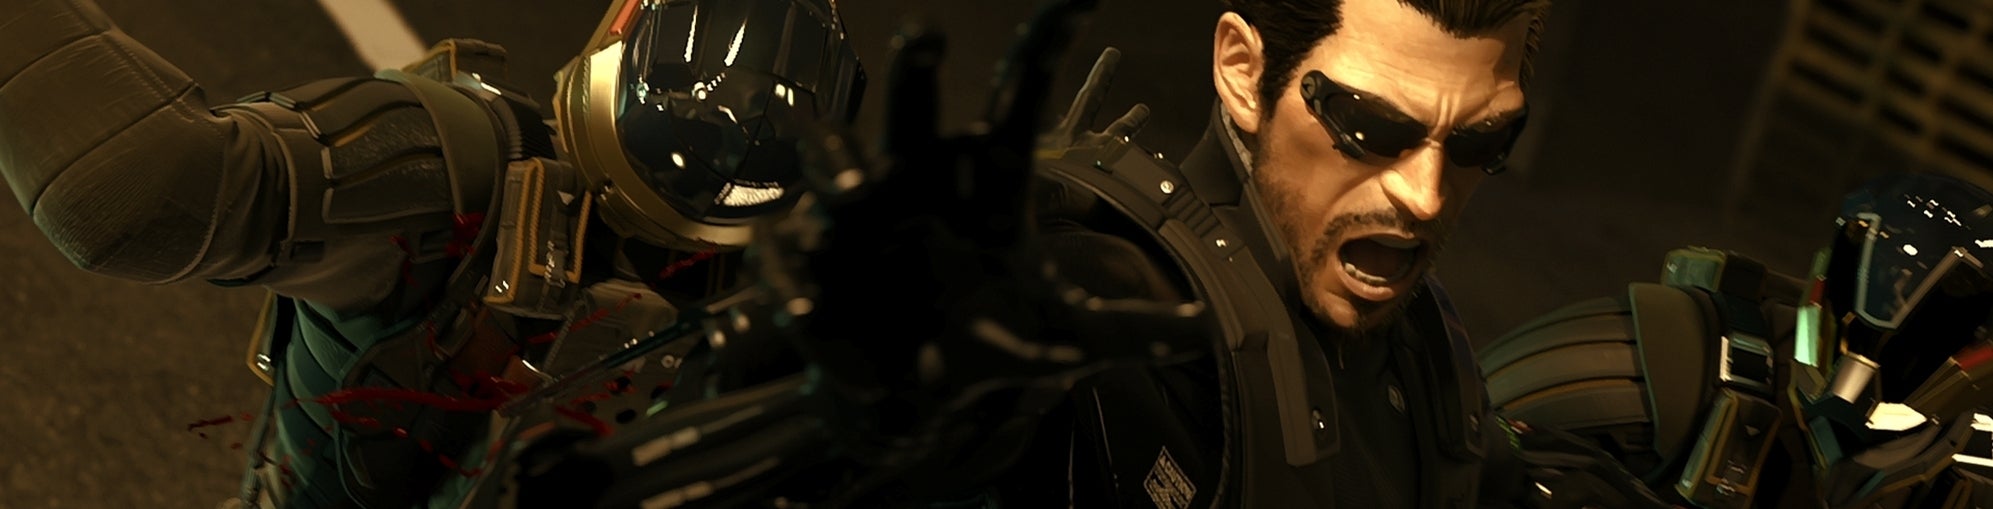 Bilder zu Eg.de Frühstart - Tomb Raider, BioShock Infinite, Deus Ex: Human Revolution